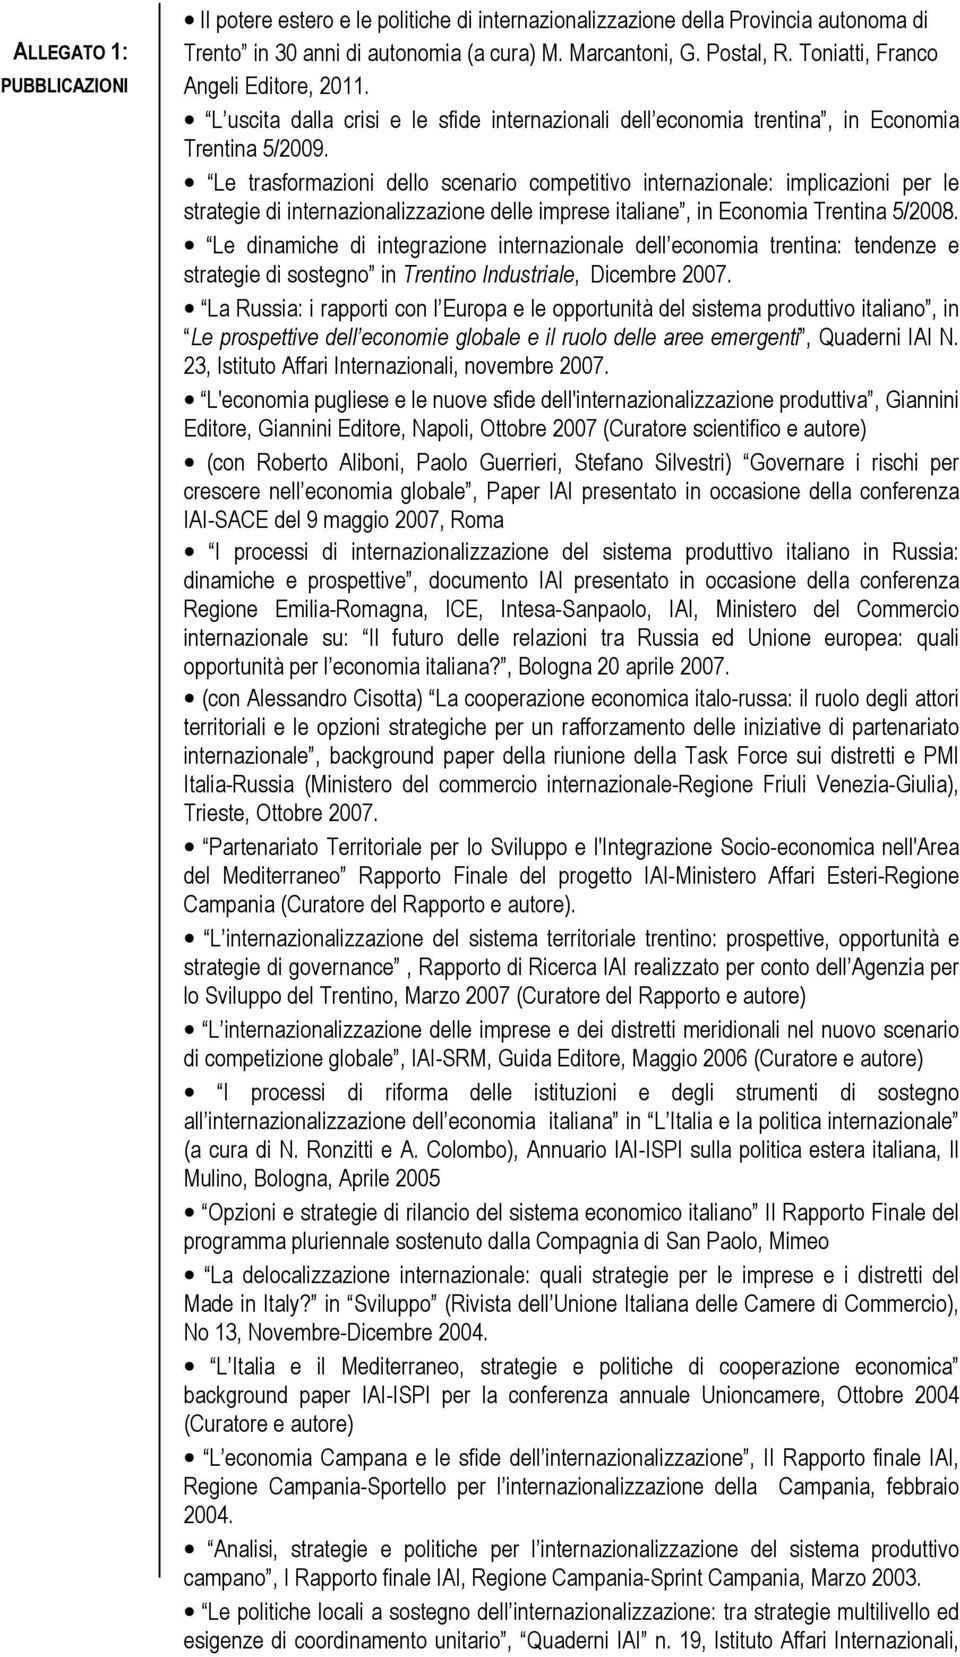 Le trasformazioni dello scenario competitivo internazionale: implicazioni per le strategie di internazionalizzazione delle imprese italiane, in Economia Trentina 5/2008.